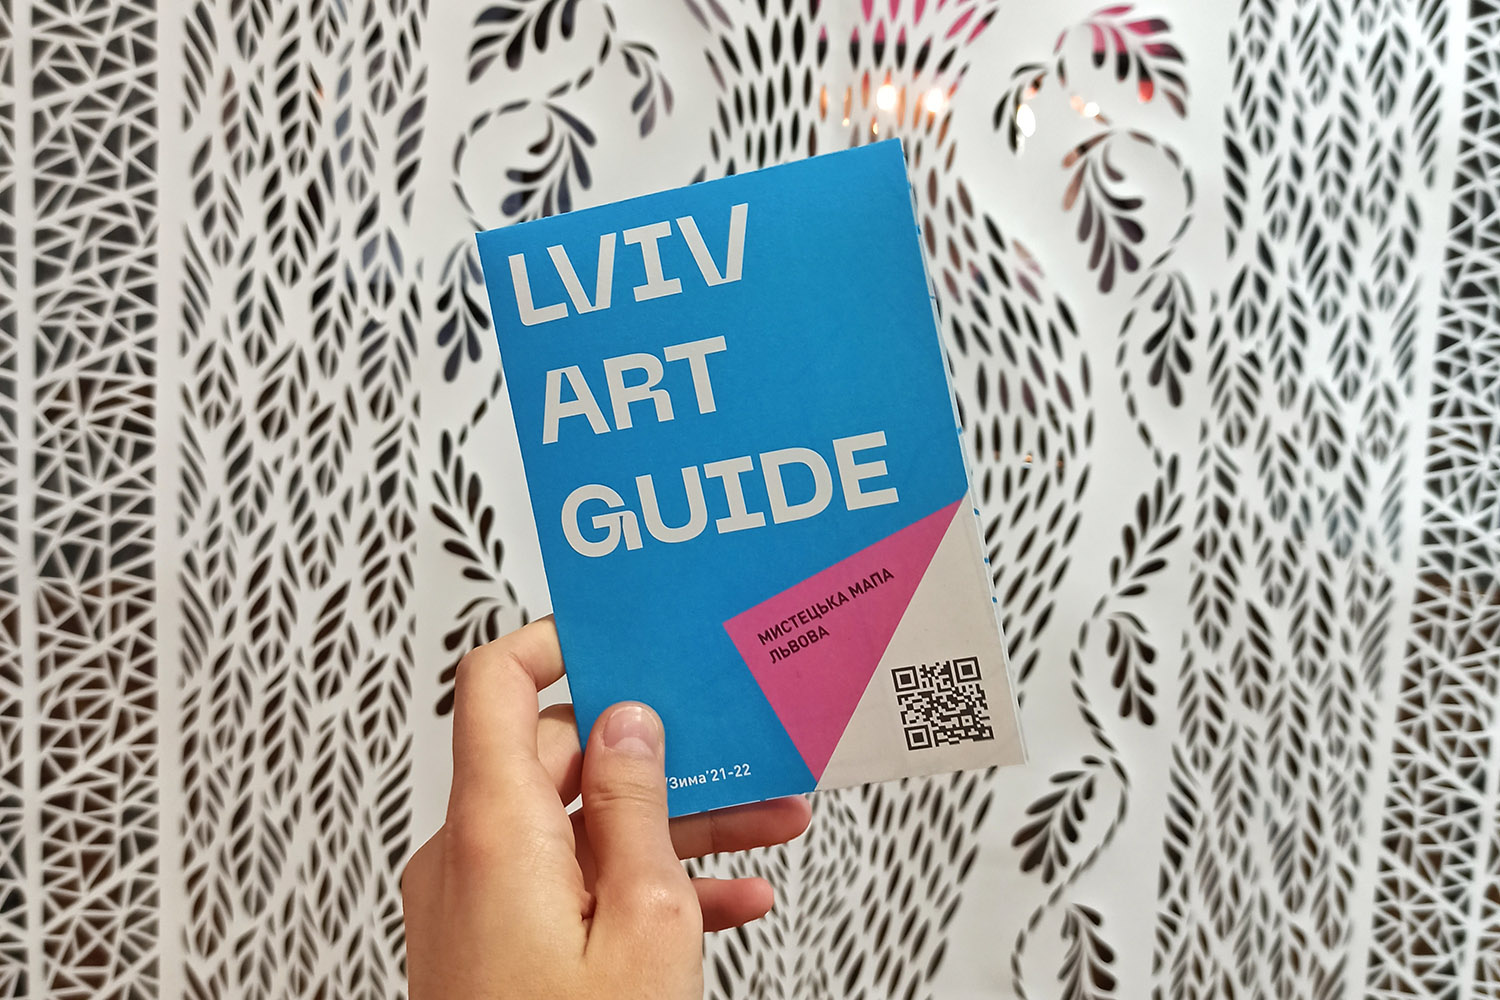 У Львові запустили Lviv Art Guide - зручну мапу-гід мистецькими просторами міста